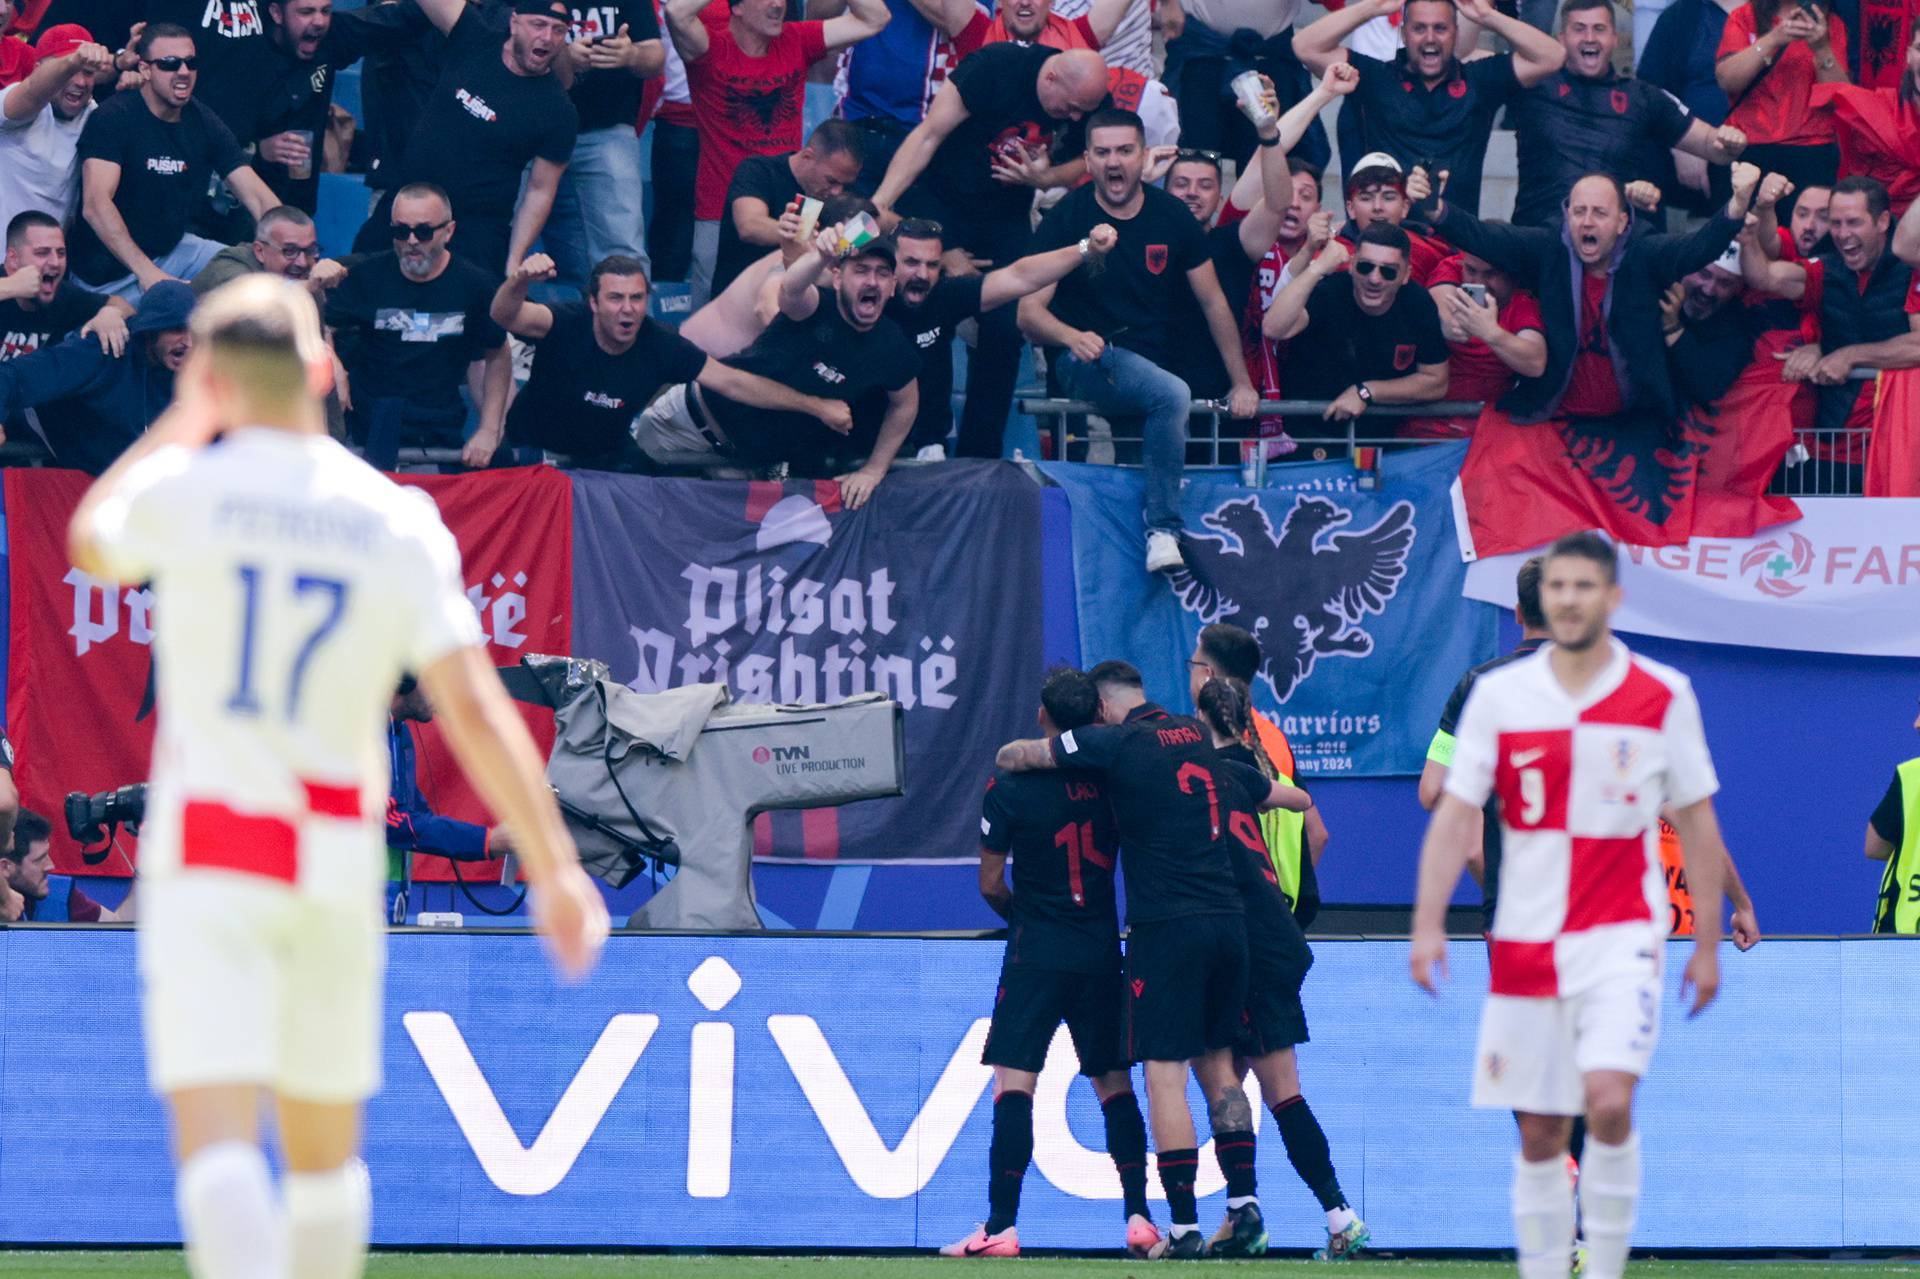 Hamburg: Albanija vodi u susretu Hrvatske i Albanije u 2. kolu skupine B na Europskom prvenstvu